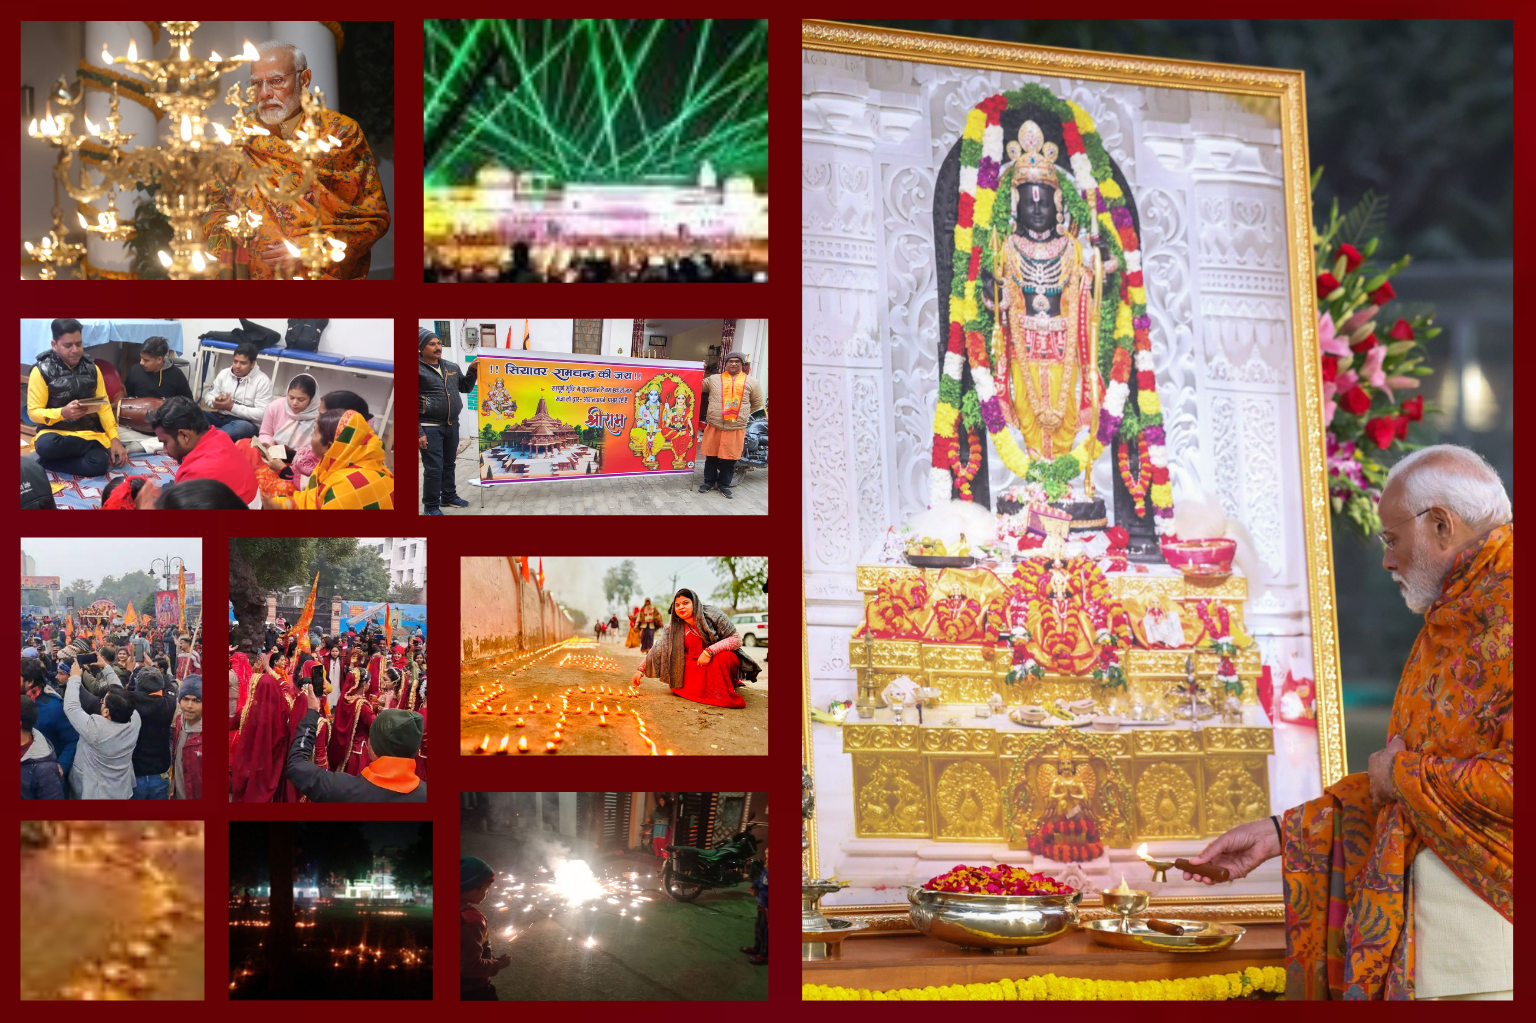 अयोध्या में भगवान राम की प्राण प्रतिष्ठा के बाद श्रीराम ज्योति प्रज्वलित कर मनाई गई दीपावली